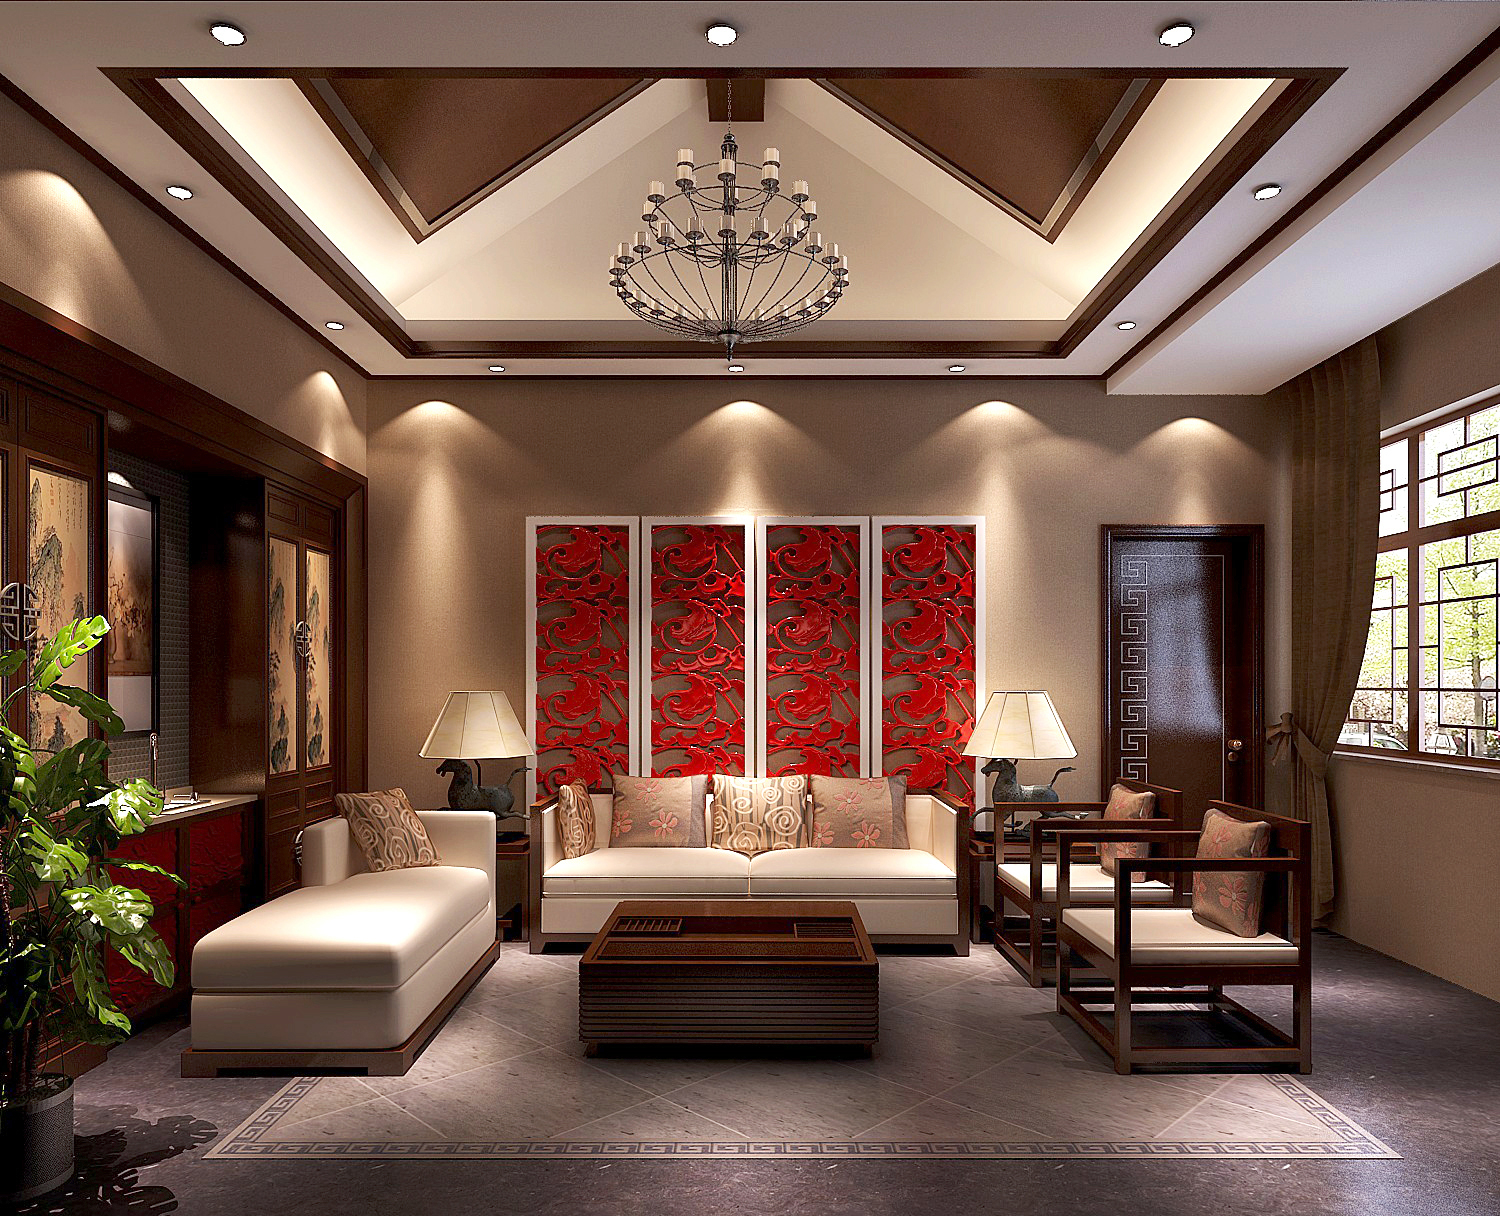 简约 新中式 高度国际 时尚 白富美 四合院 别墅 白领 80后 客厅图片来自北京高度国际装饰设计在新中式私人四合院的分享